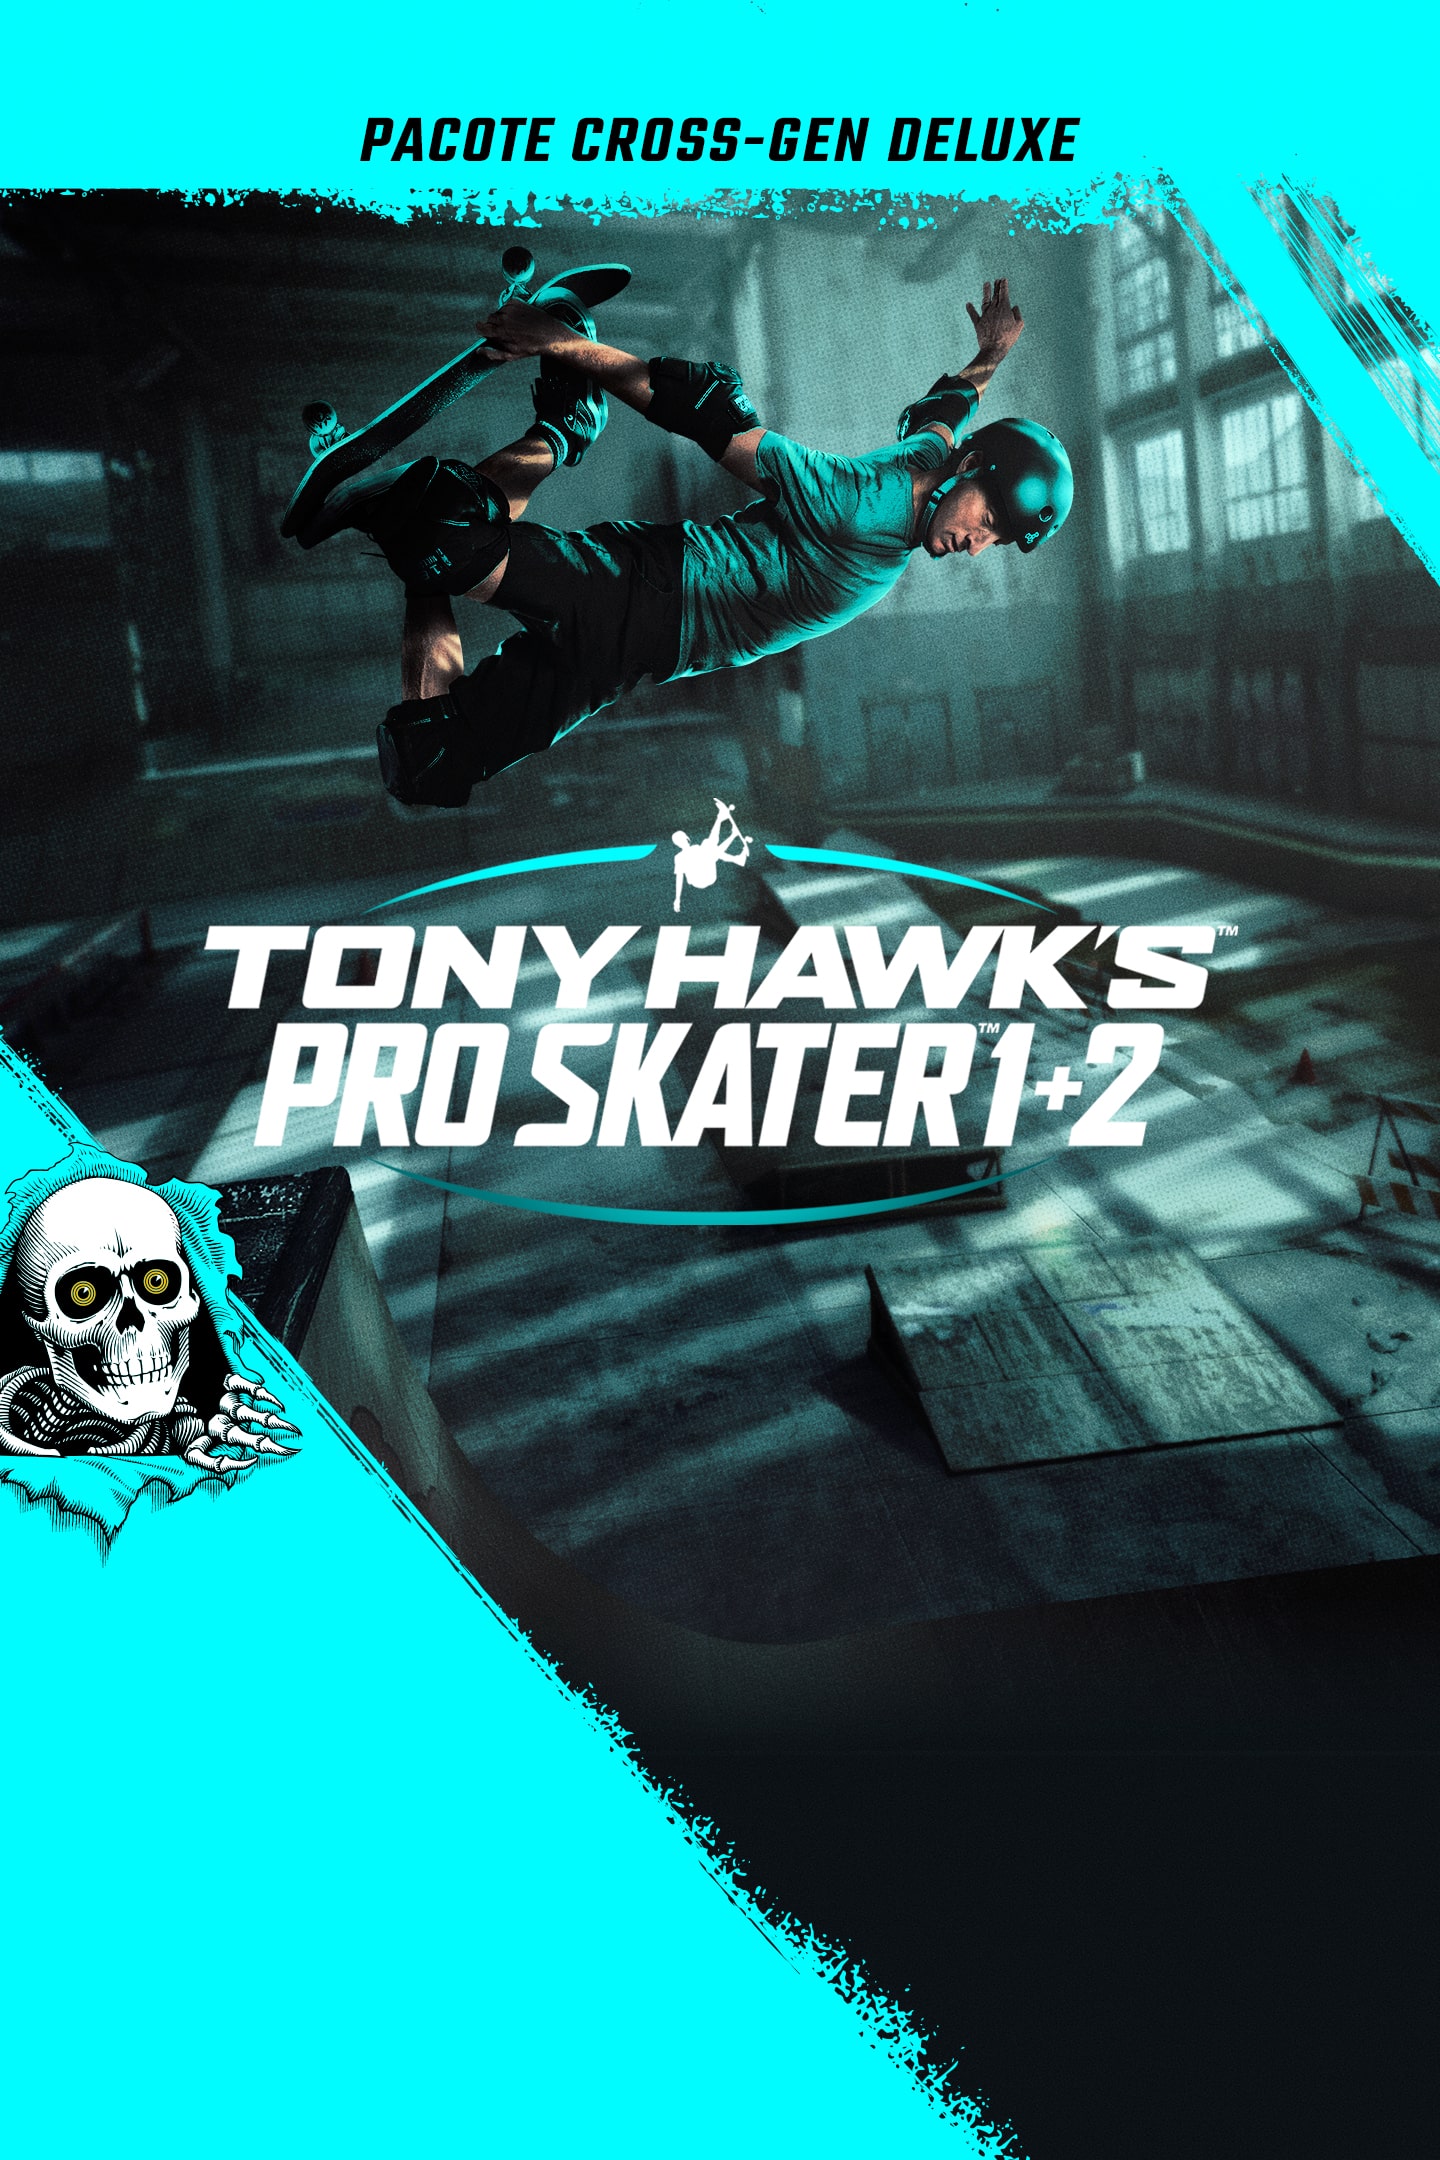 Tony Hawk's Pro Skater 1 and 2 Collector's Edition - PlayStation 4 - Games,  Edição de Colecionador, Acessórios para Gamers e muito mais! Legacy Games  Brasil.